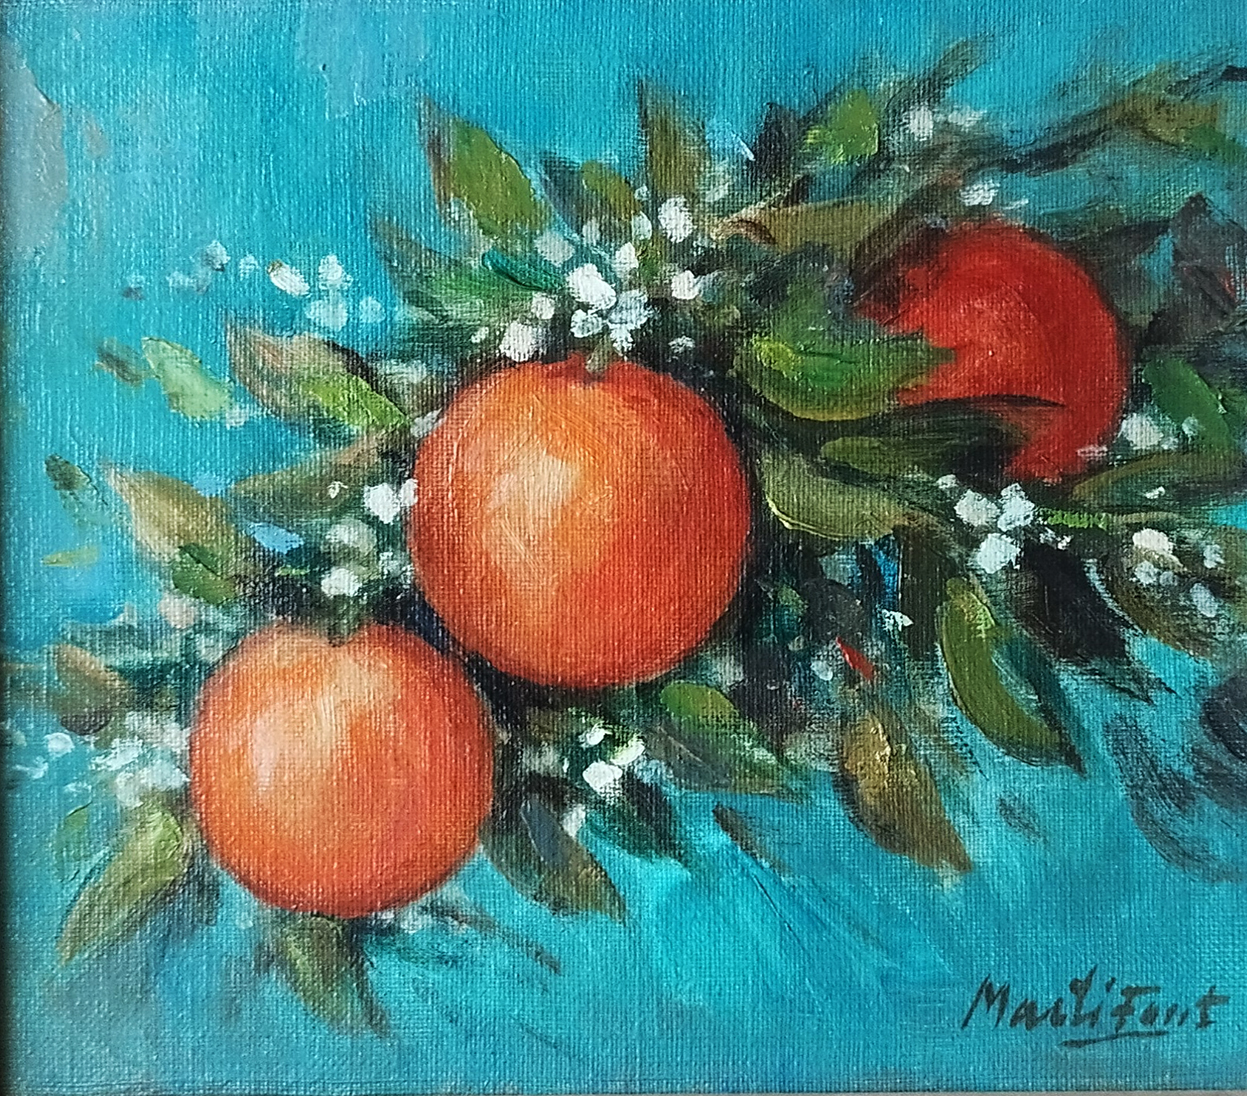 Pintor Martí font: Naranjas